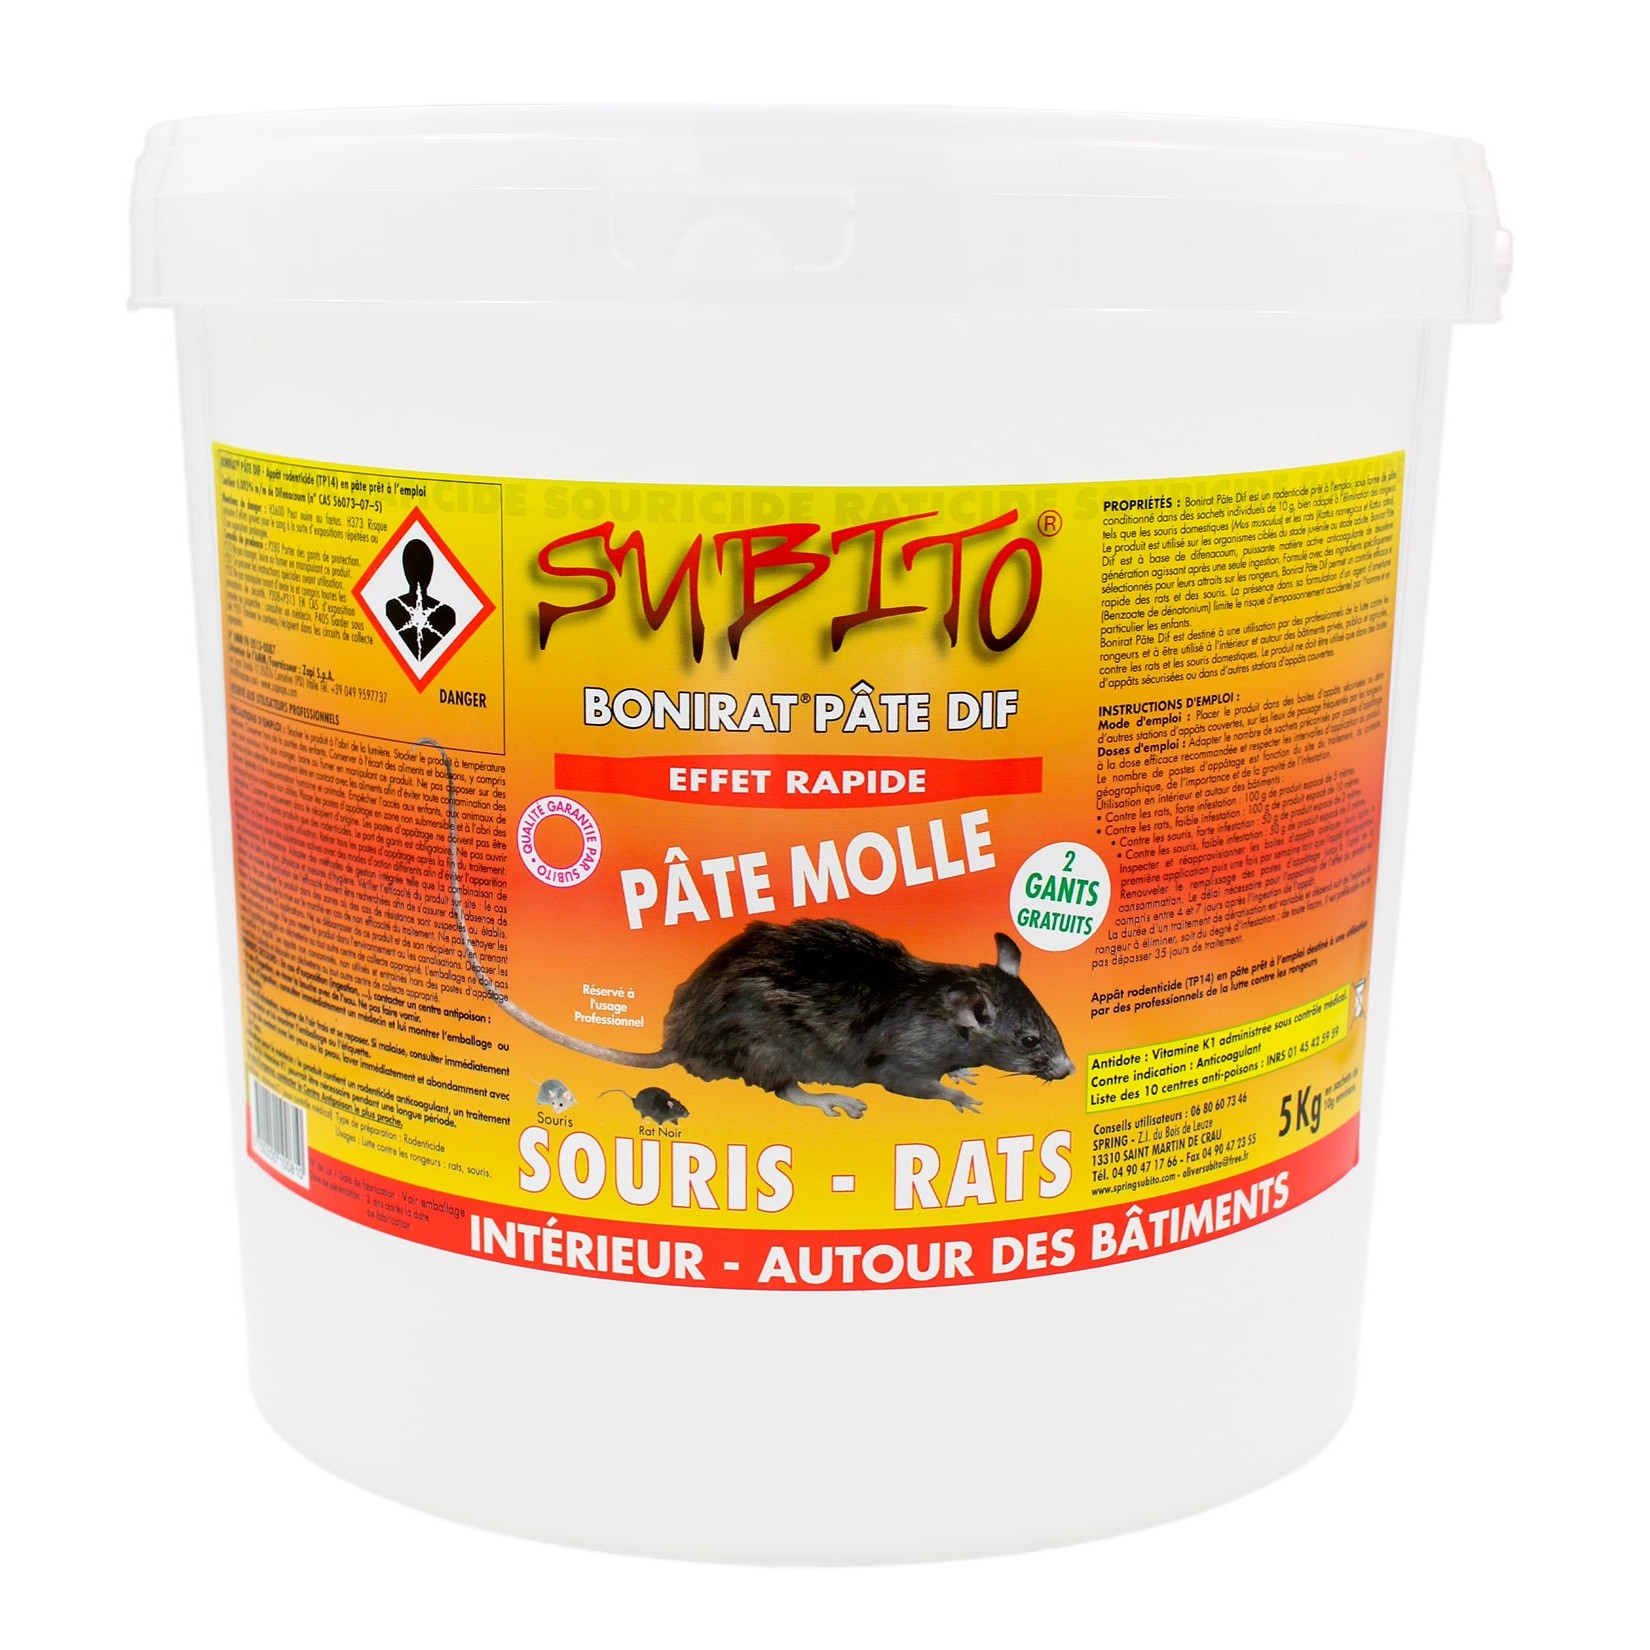 Bonirat pâte DIF raticide souricide pâte molle seau de 5 kg de Subito | Insecticide Antinuisible Qualité Professionnelle